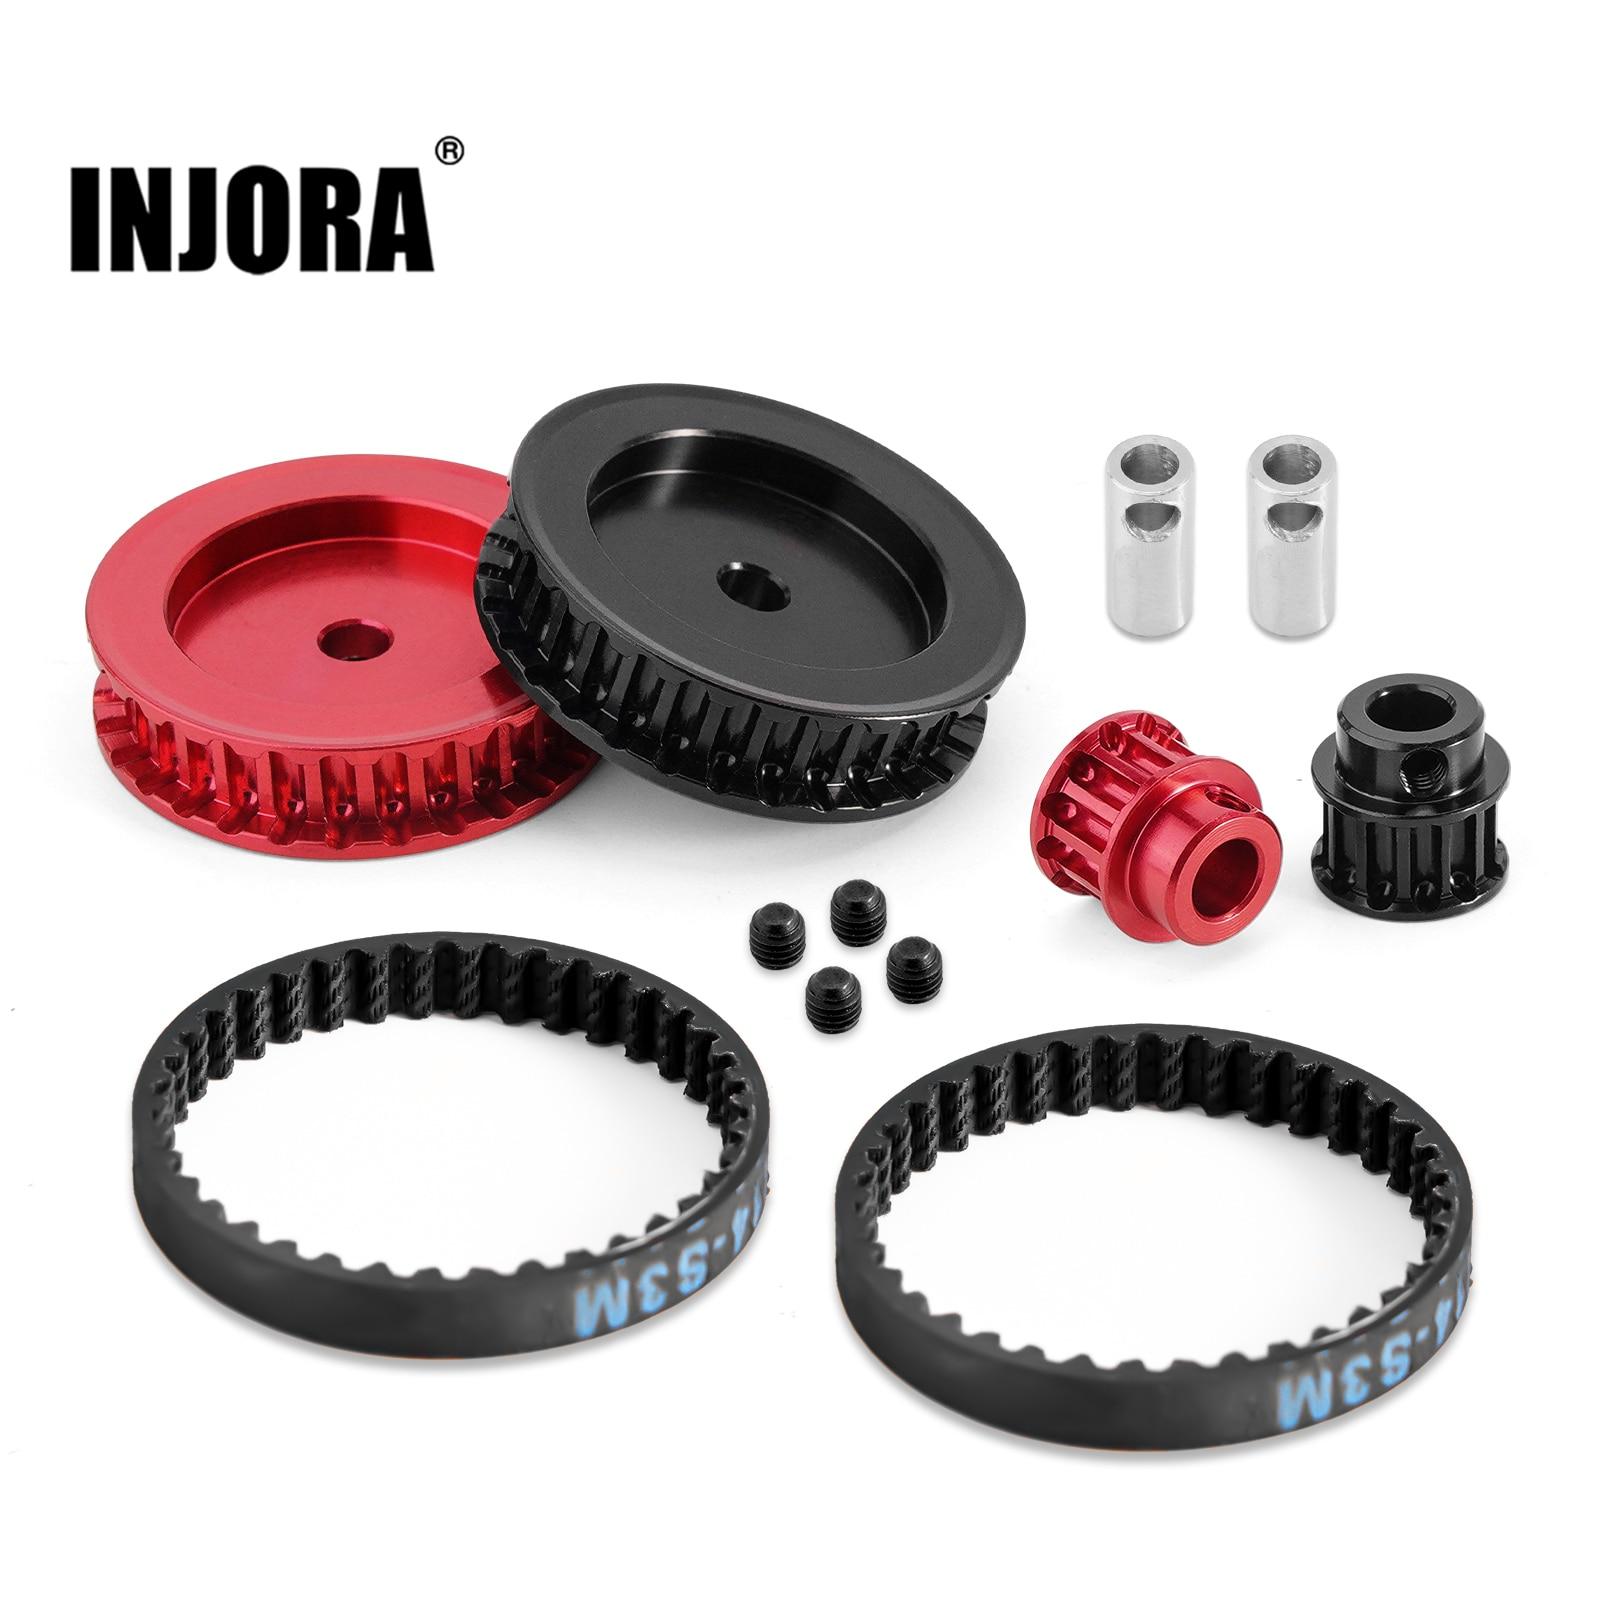 INJORA-Belt-Drive-Transmission-Gears-Set-for-1-10-RC-Crawler-TRX4-Upgrade.jpg